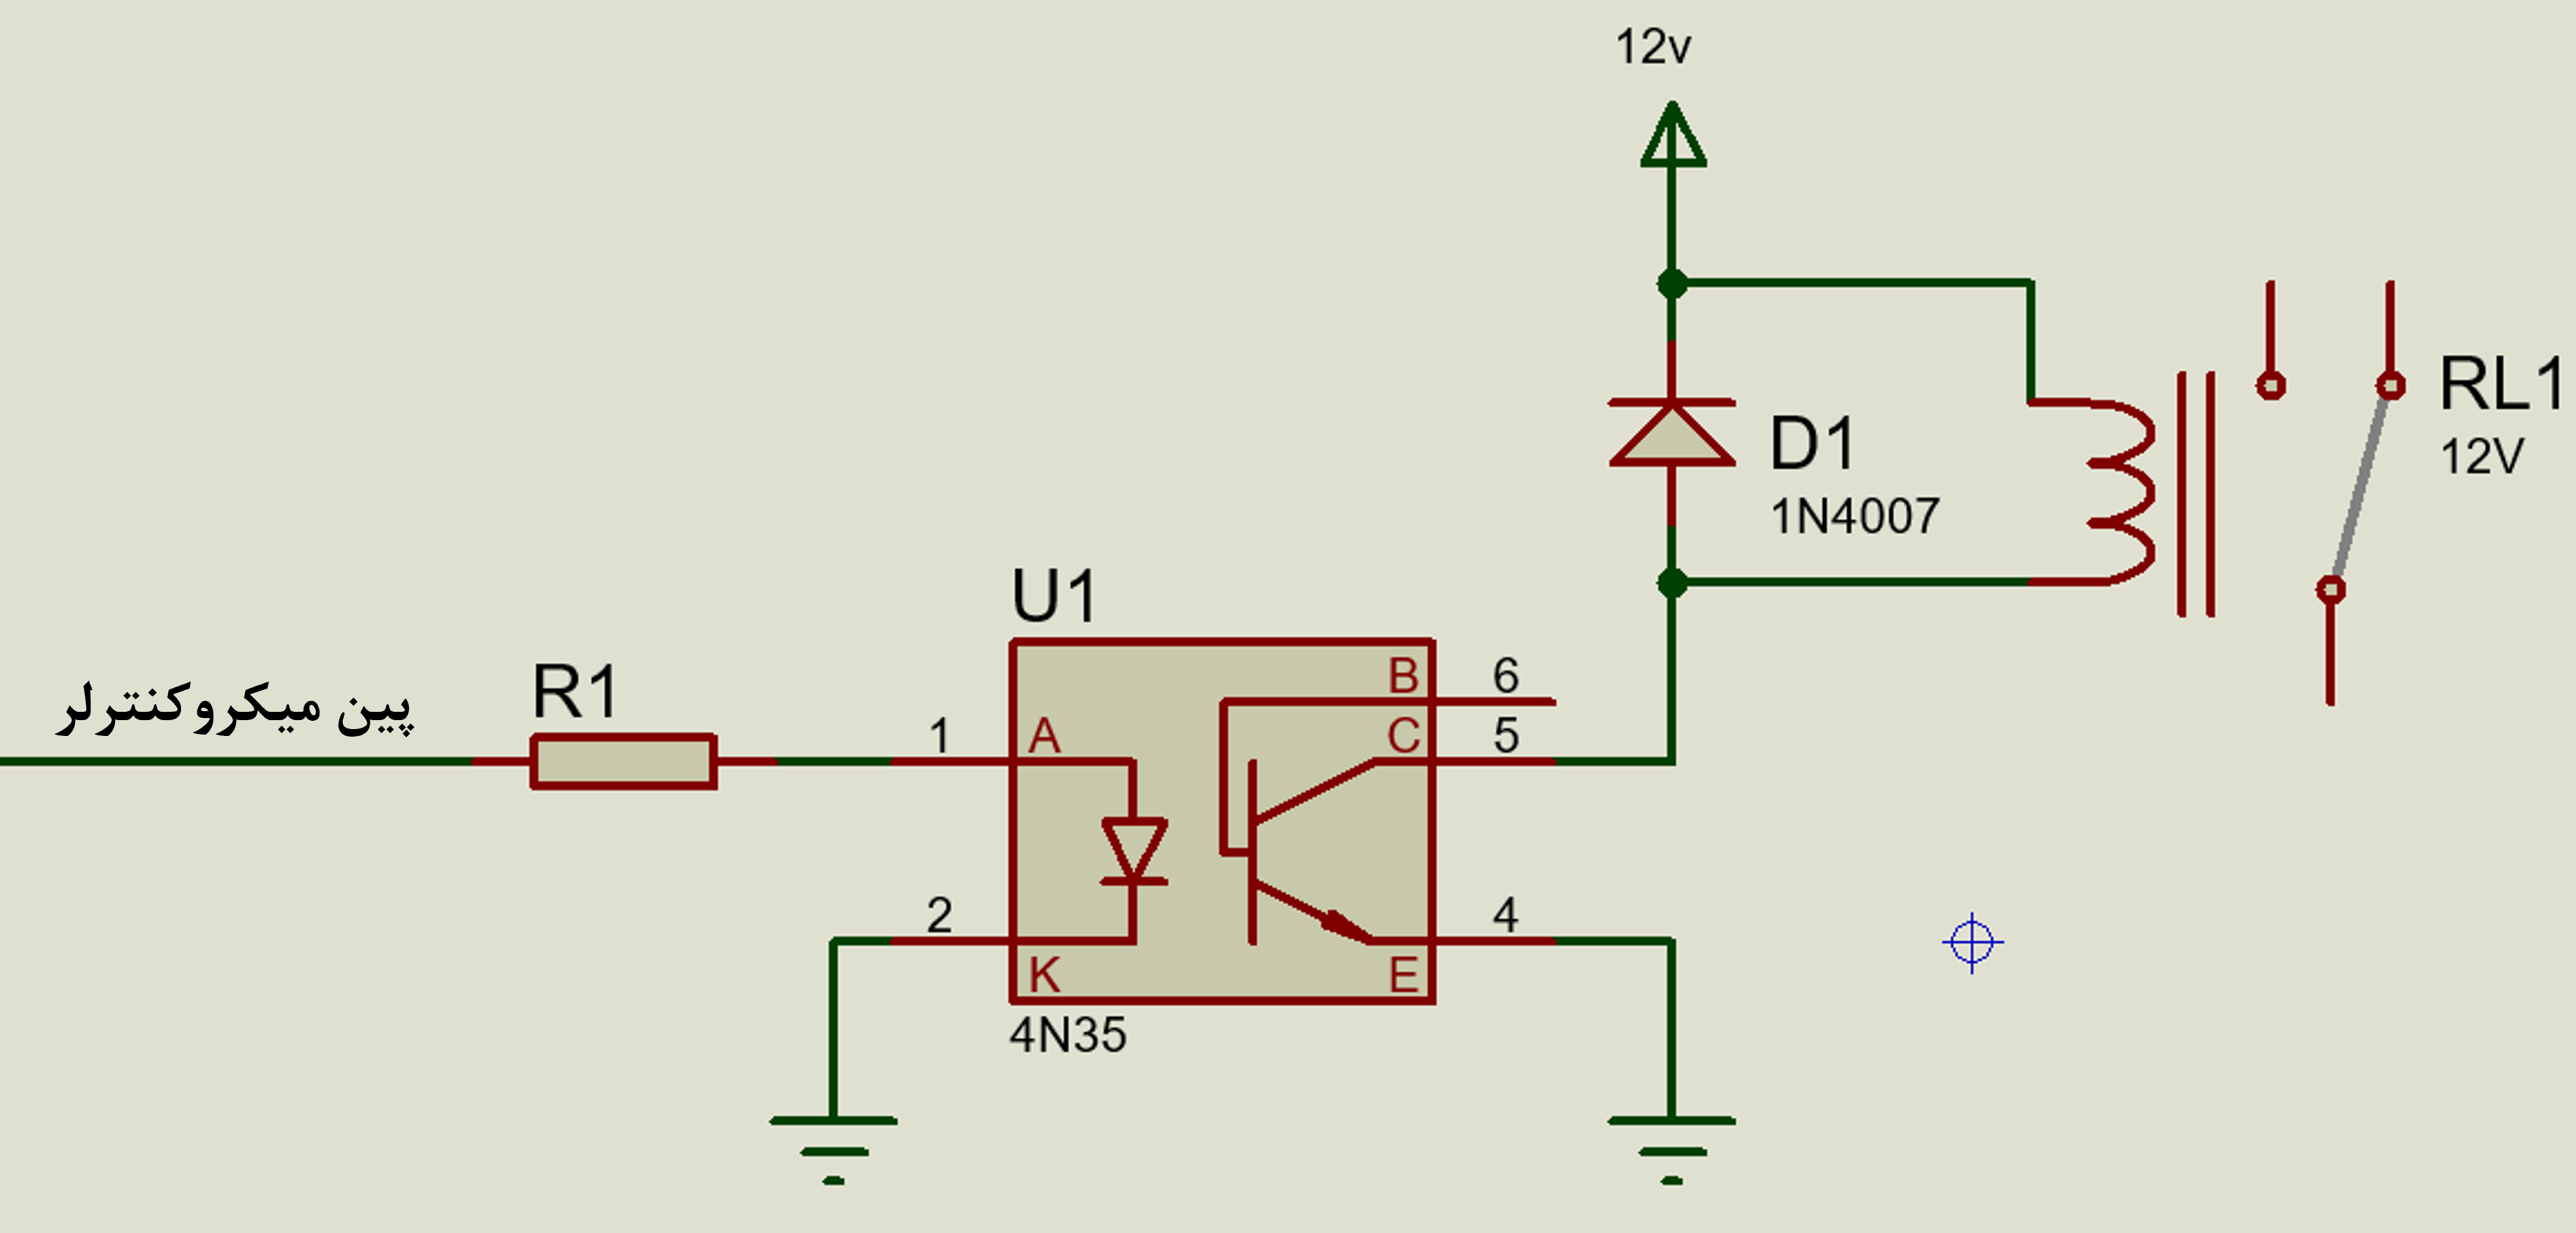 npn transistor